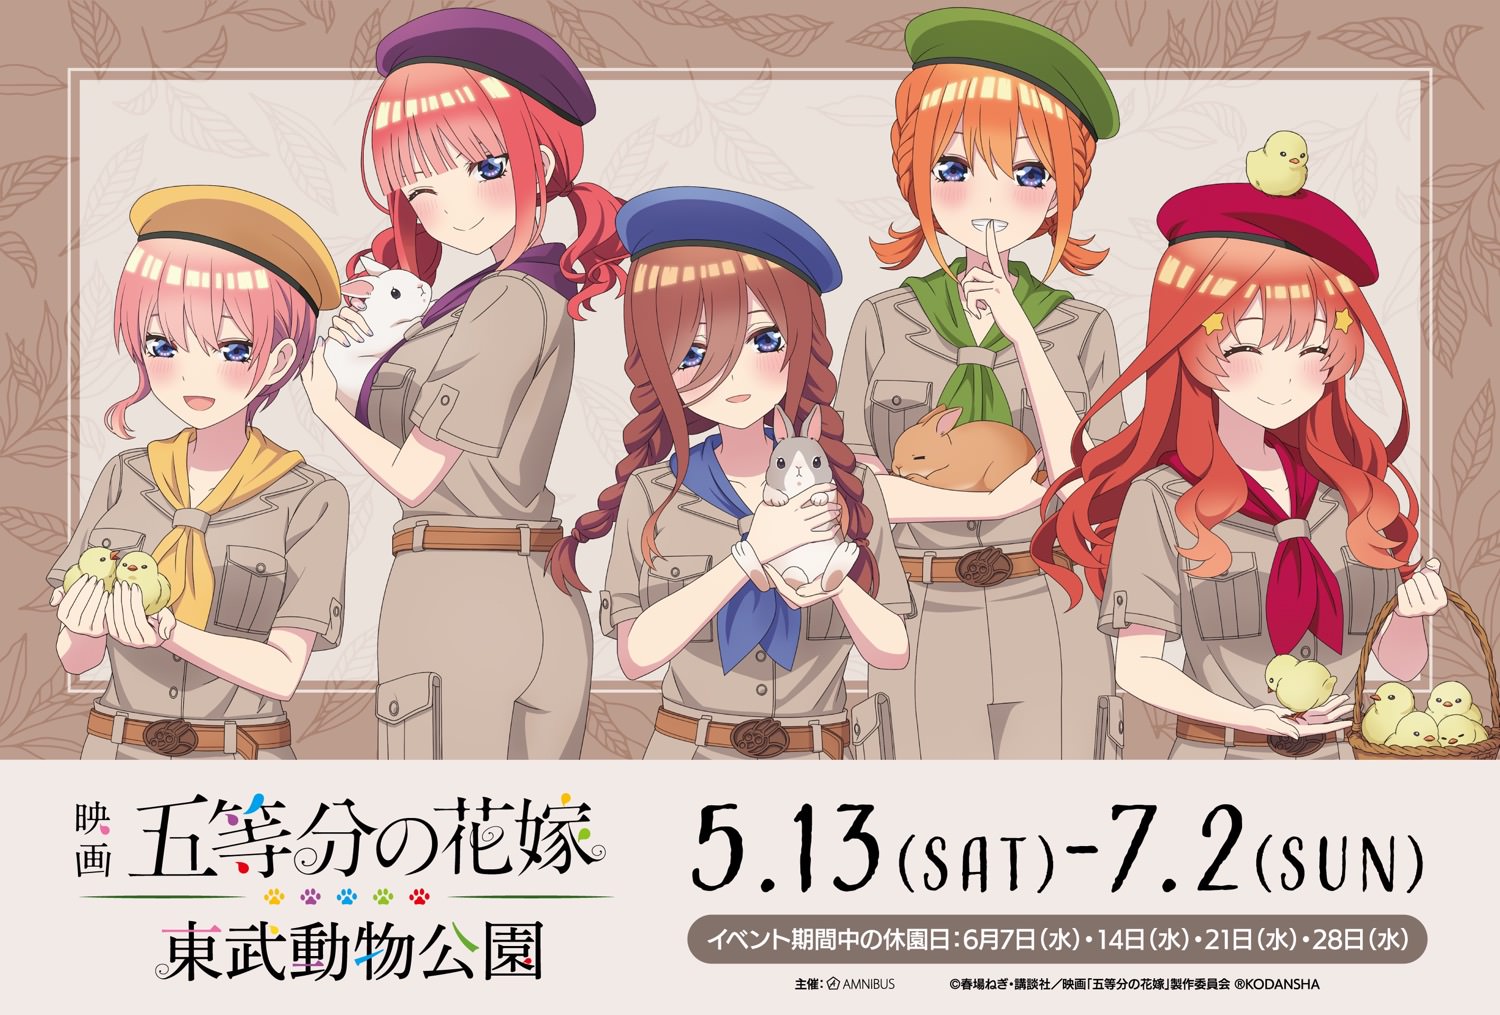 映画「五等分の花嫁」× 東武動物公園 5月13日よりコラボ開催!